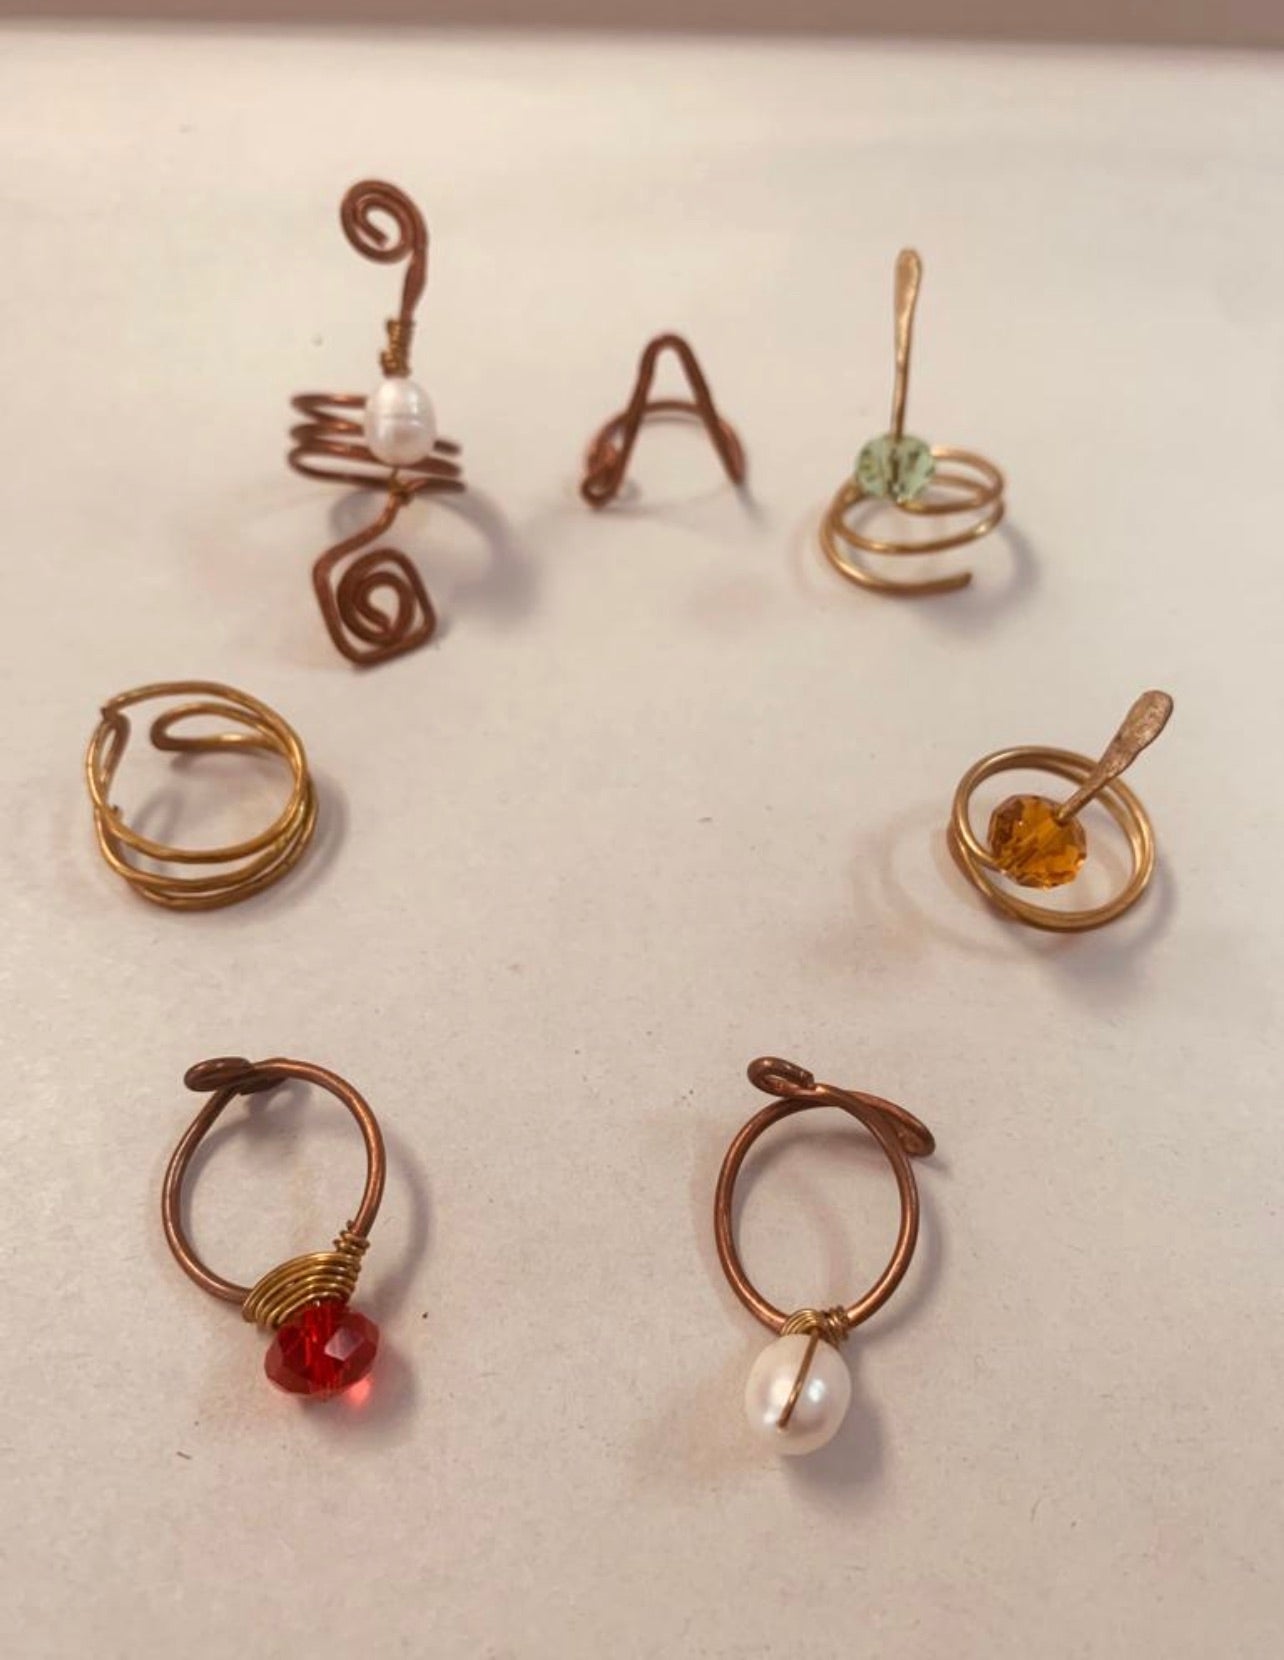 Handmade Copper Rings set.